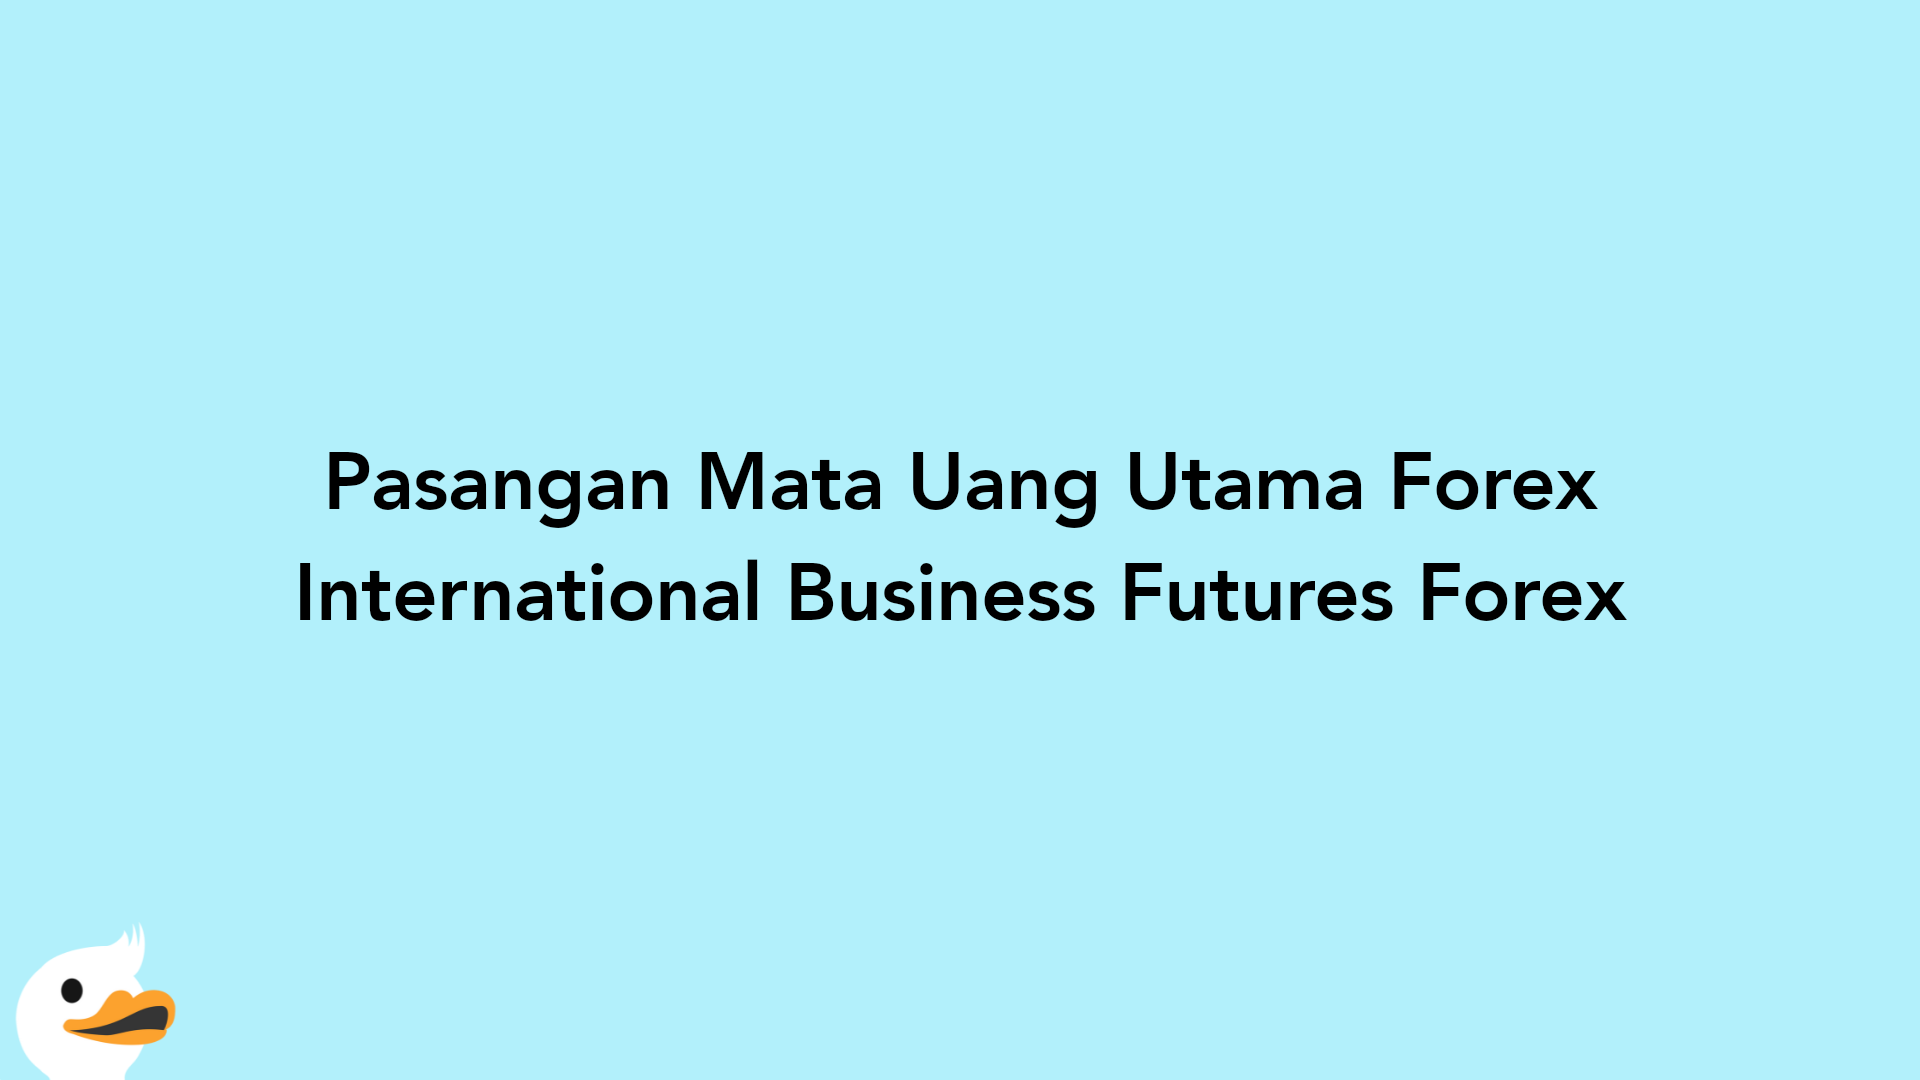 Pasangan Mata Uang Utama Forex International Business Futures Forex